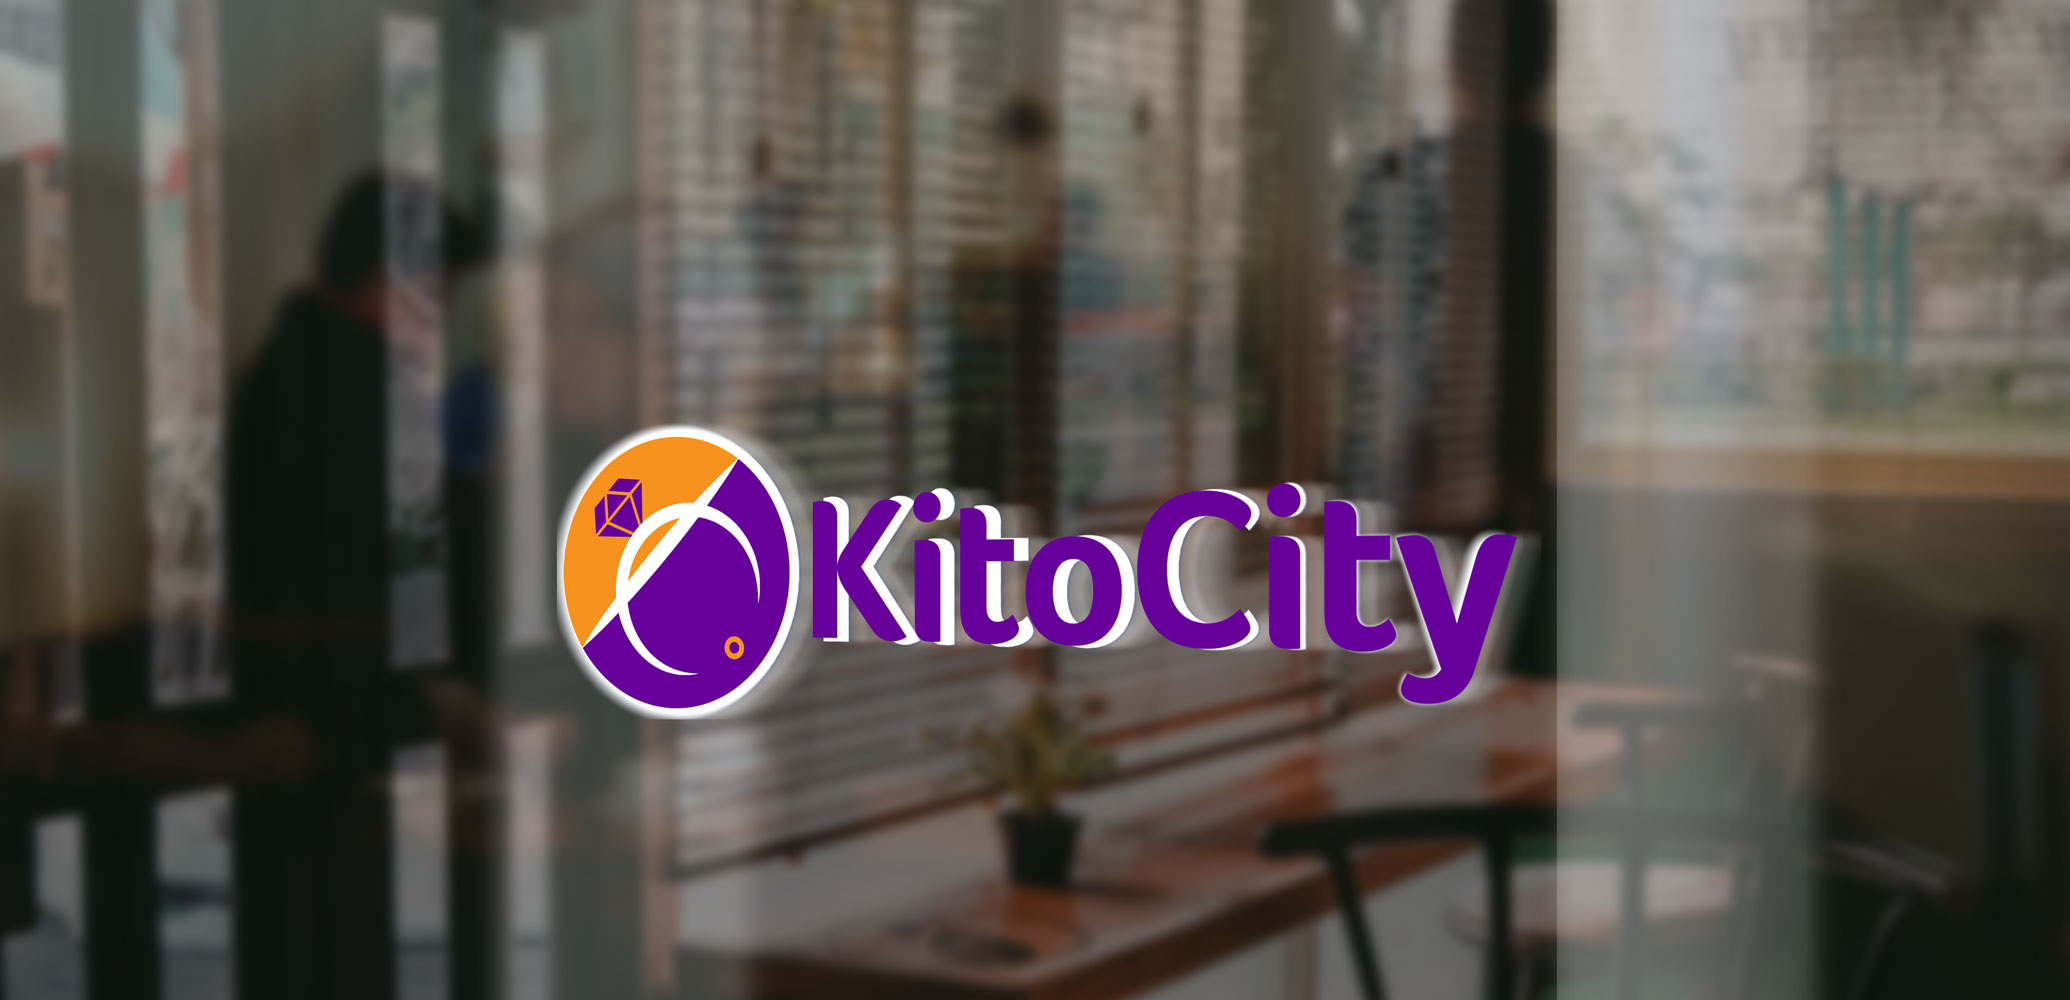 Kito City Contacts